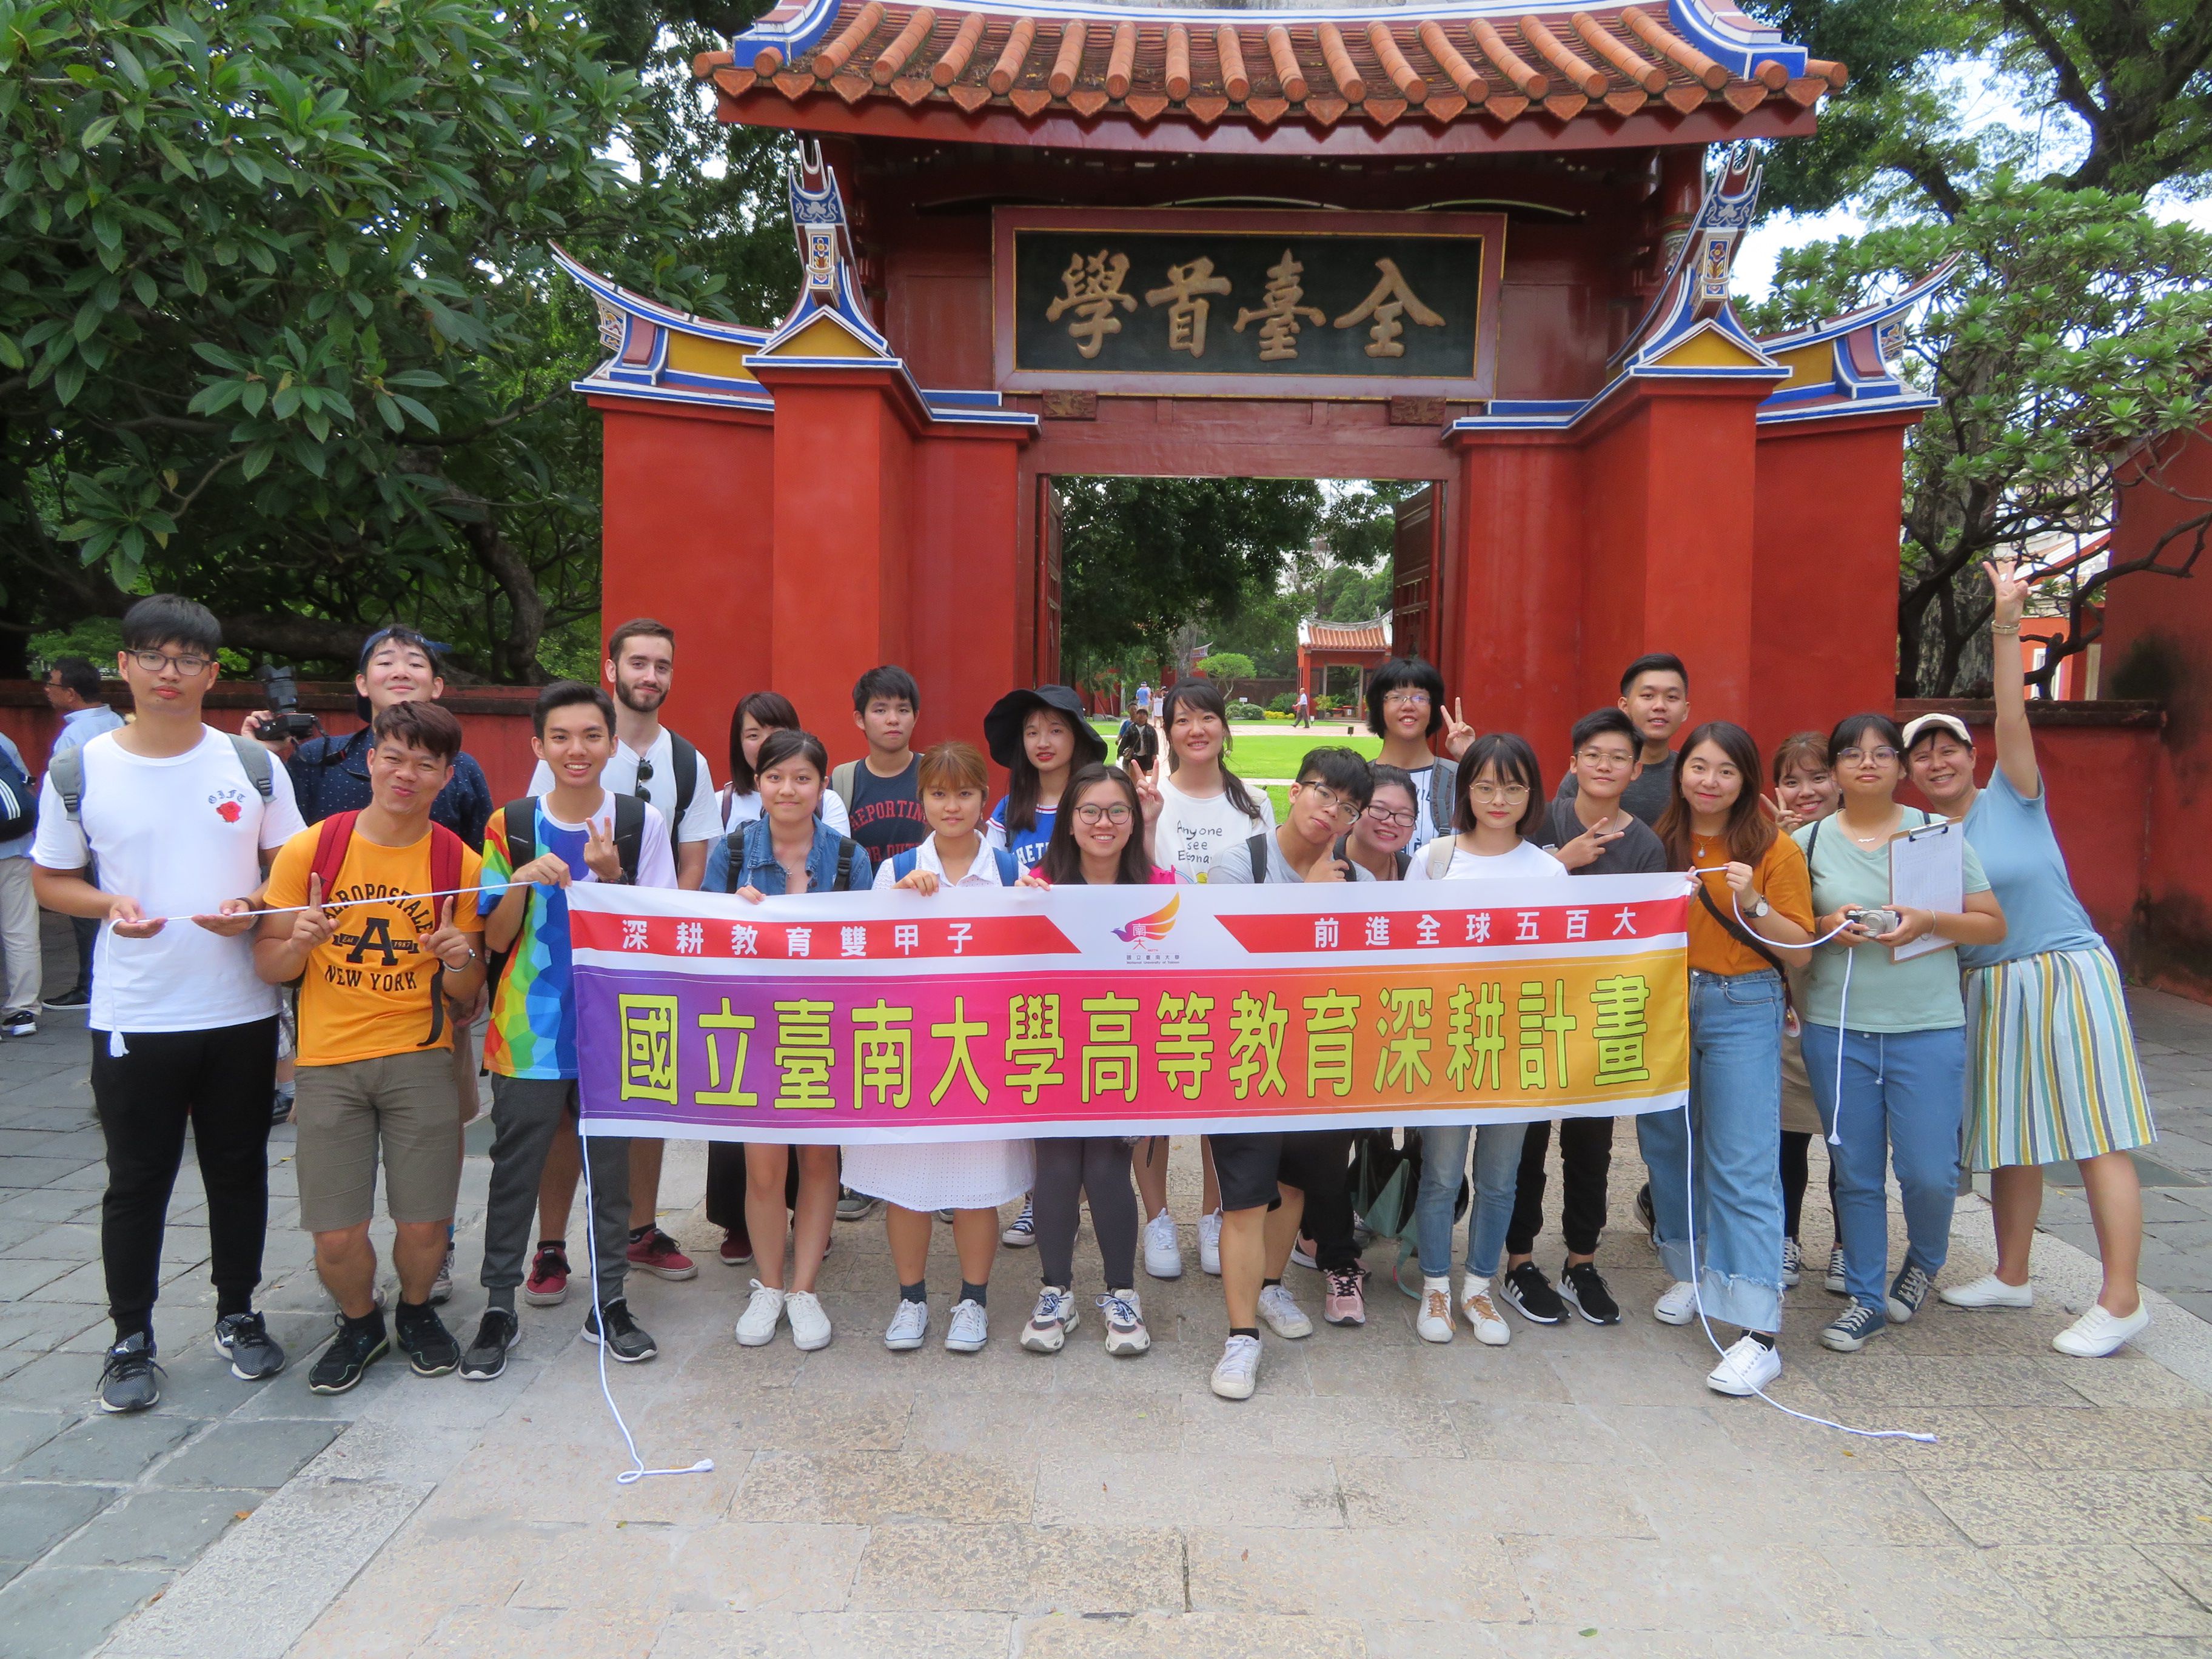 108-1 境外生 台南善化與中西區廟宇文化參訪